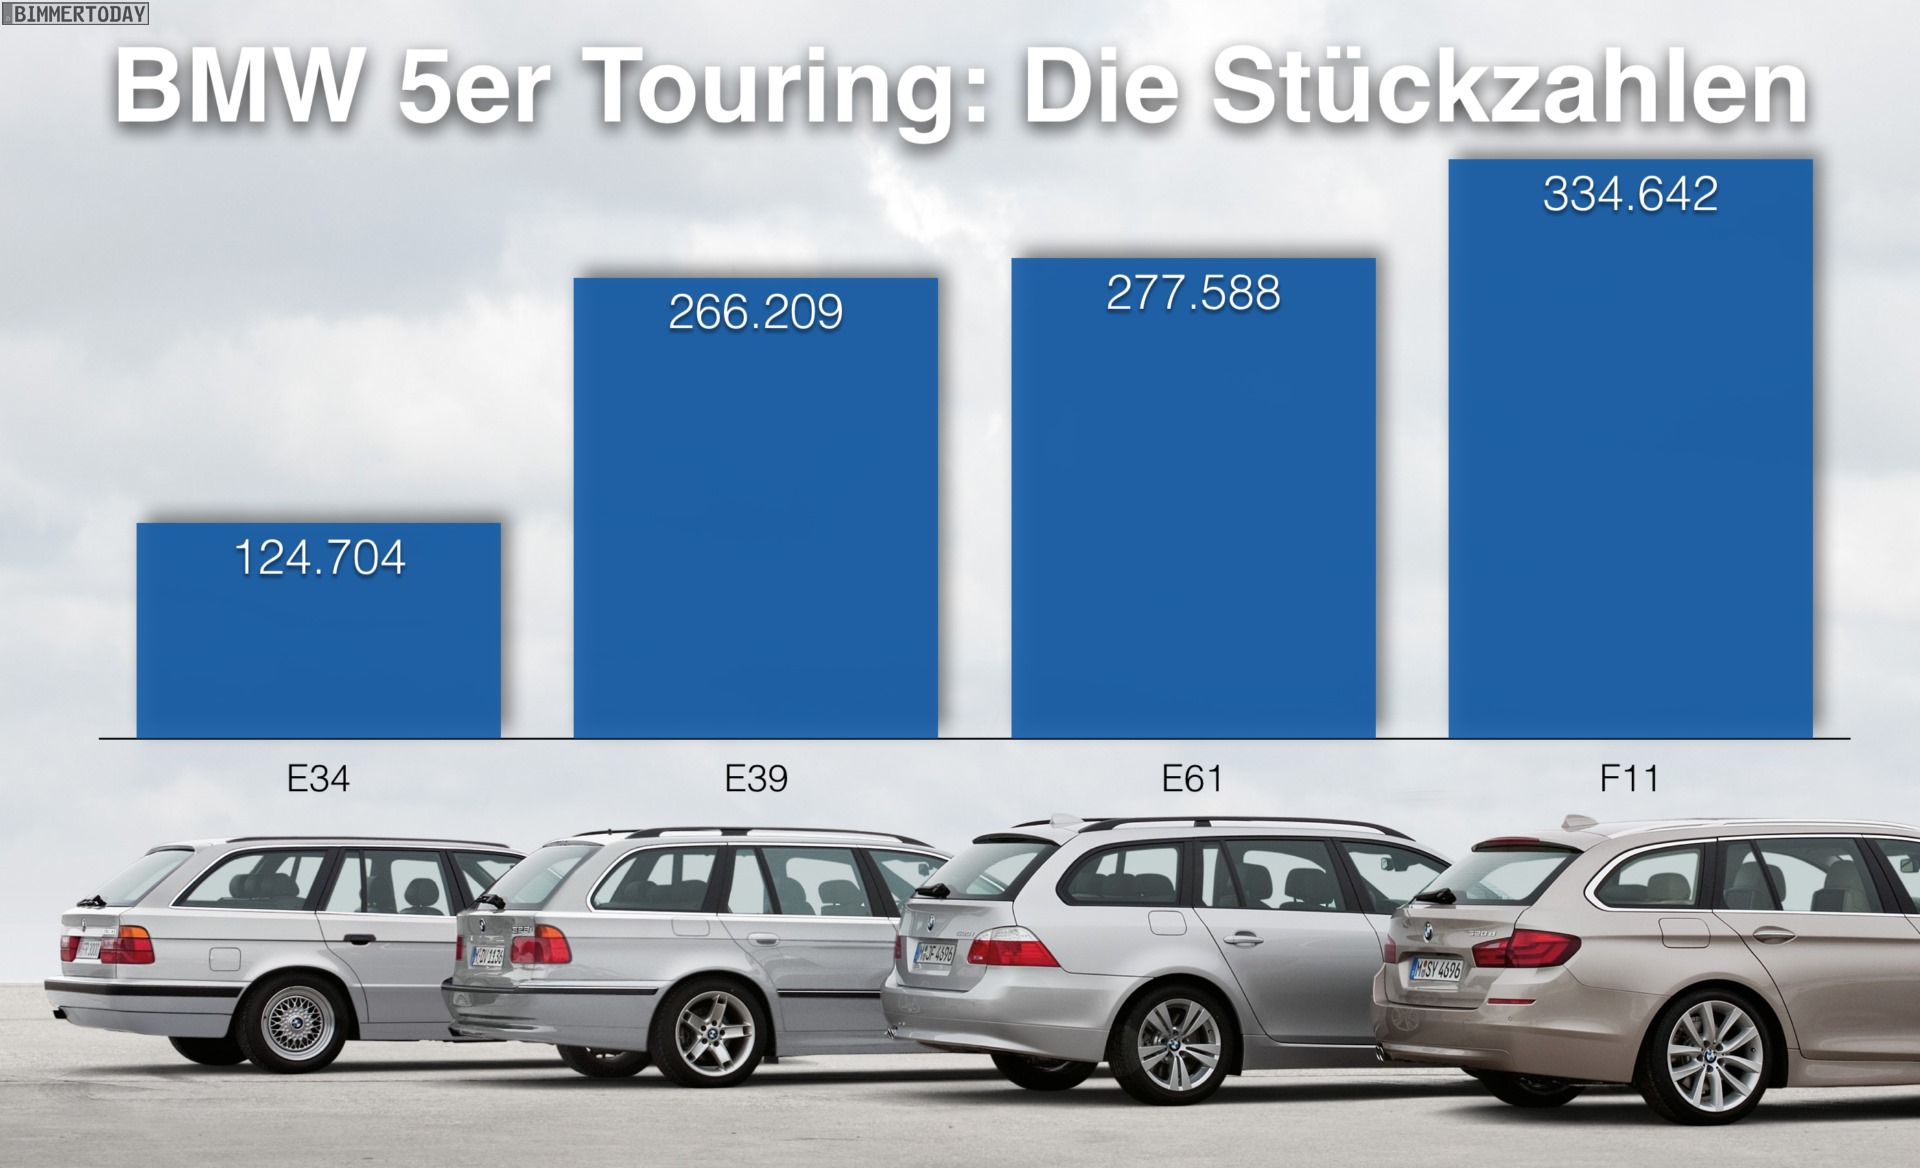 BMW-5er-Touring-St-ckzahlen-der-Generationen-E34-E39-E61-F11